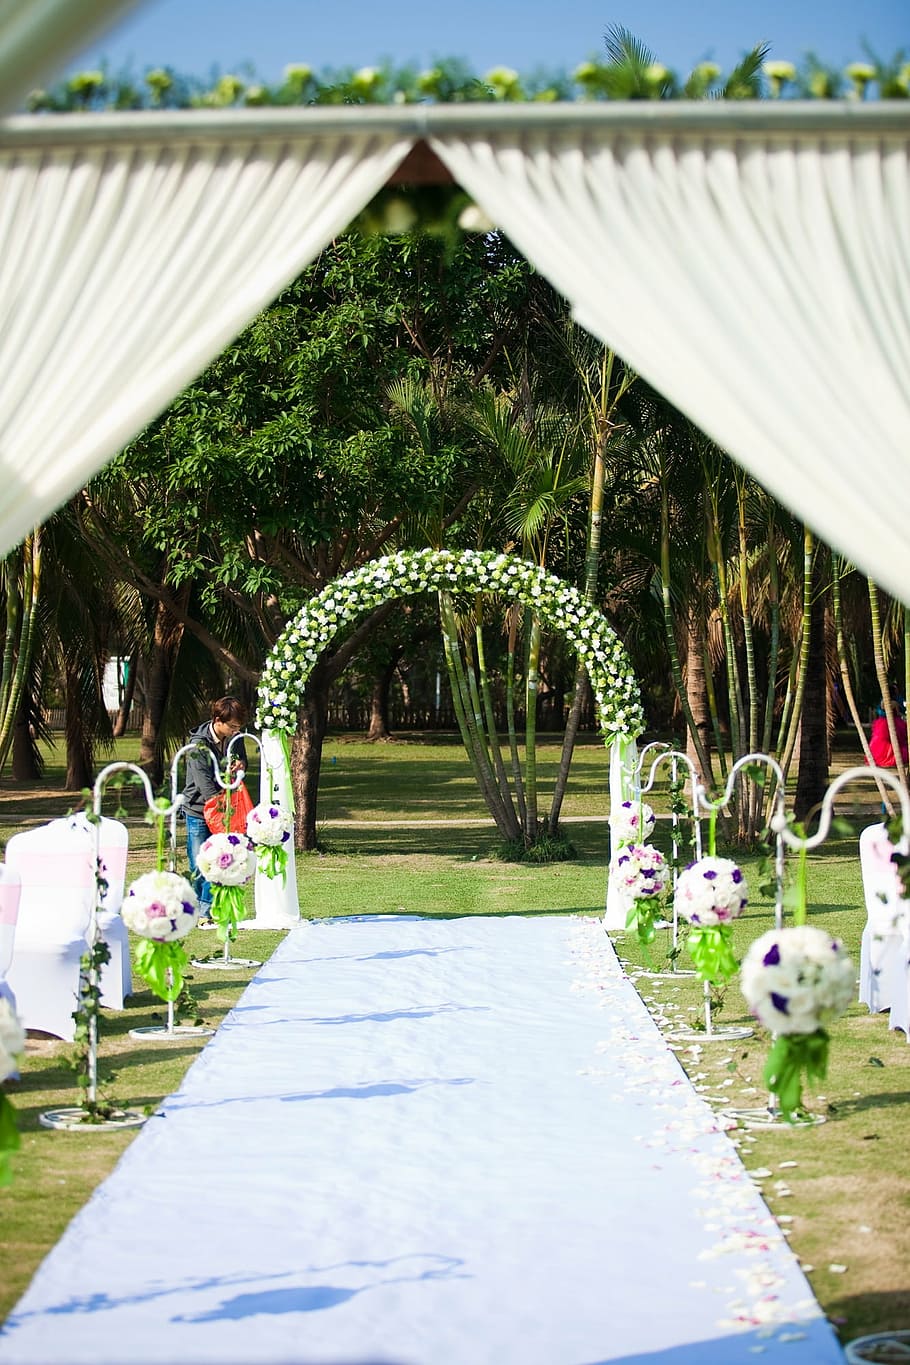 pabellón de ceremonia, boda, blanco y verde, planta, arquitectura, estructura construida, naturaleza, césped, gente incidental, día